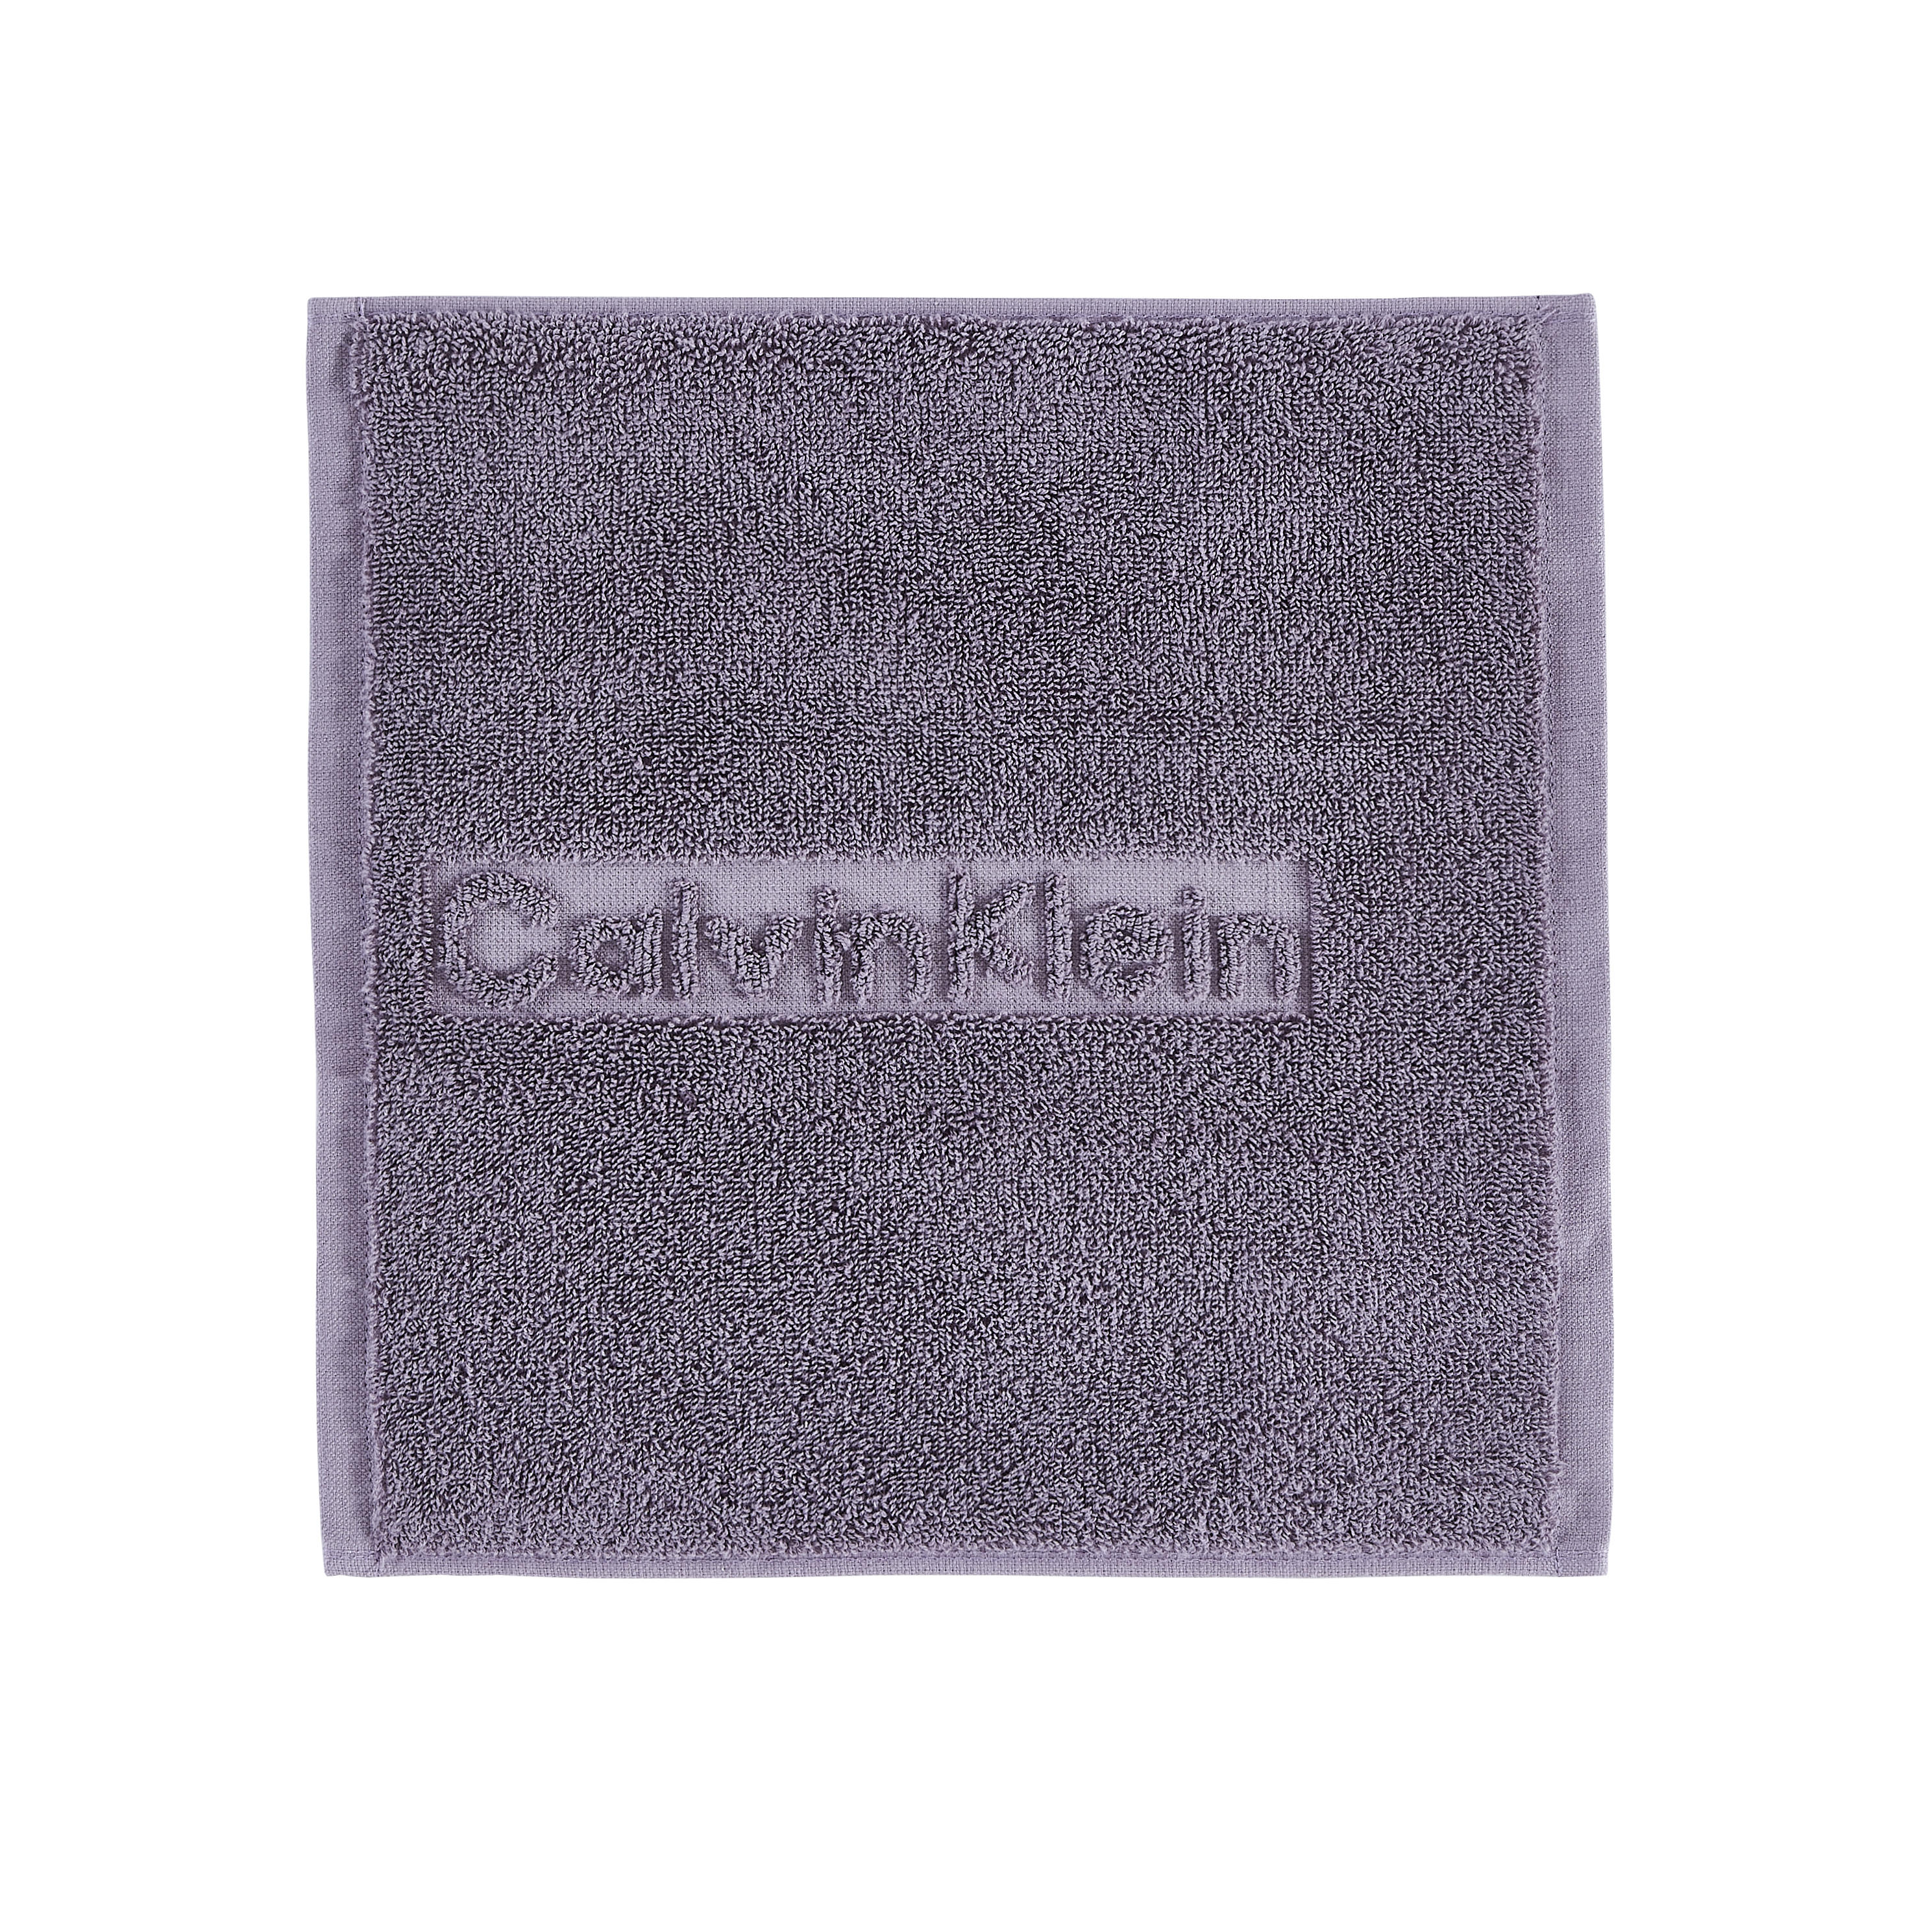 SEIFTUCH  Flieder  2-teilig  - Flieder, Basics, Textil (30/30cm) - Calvin Klein